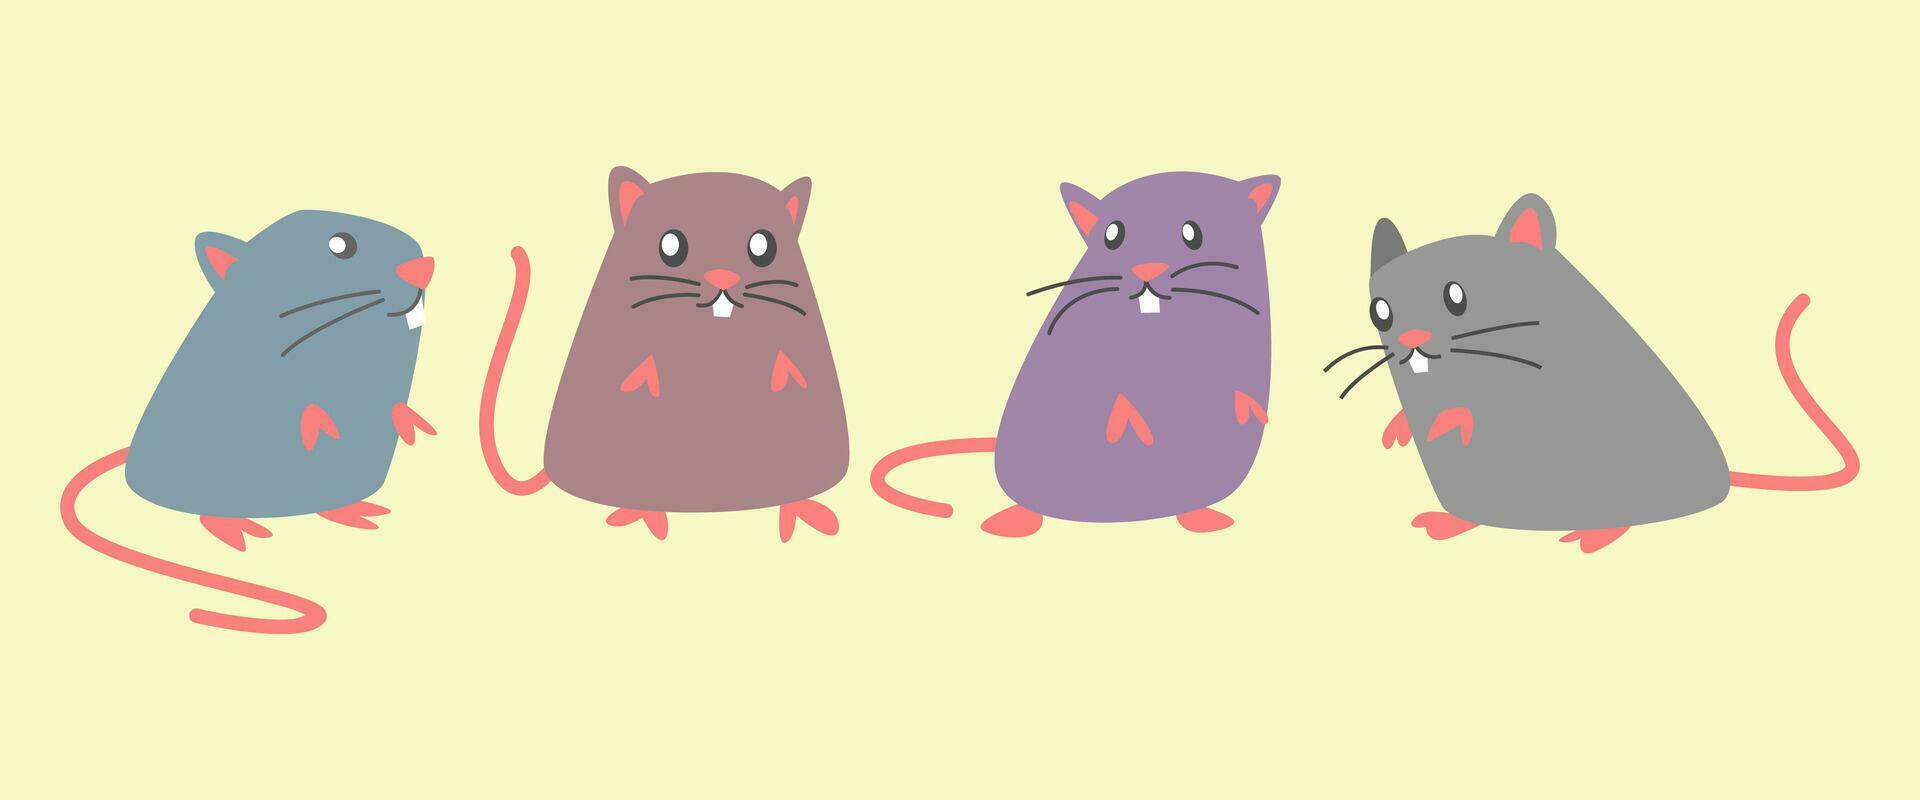 alguns fofa ratos com diferente em pé poses e cores. plano desenho animado. ratos, rato, animal, roedor gráfico vetor definir.